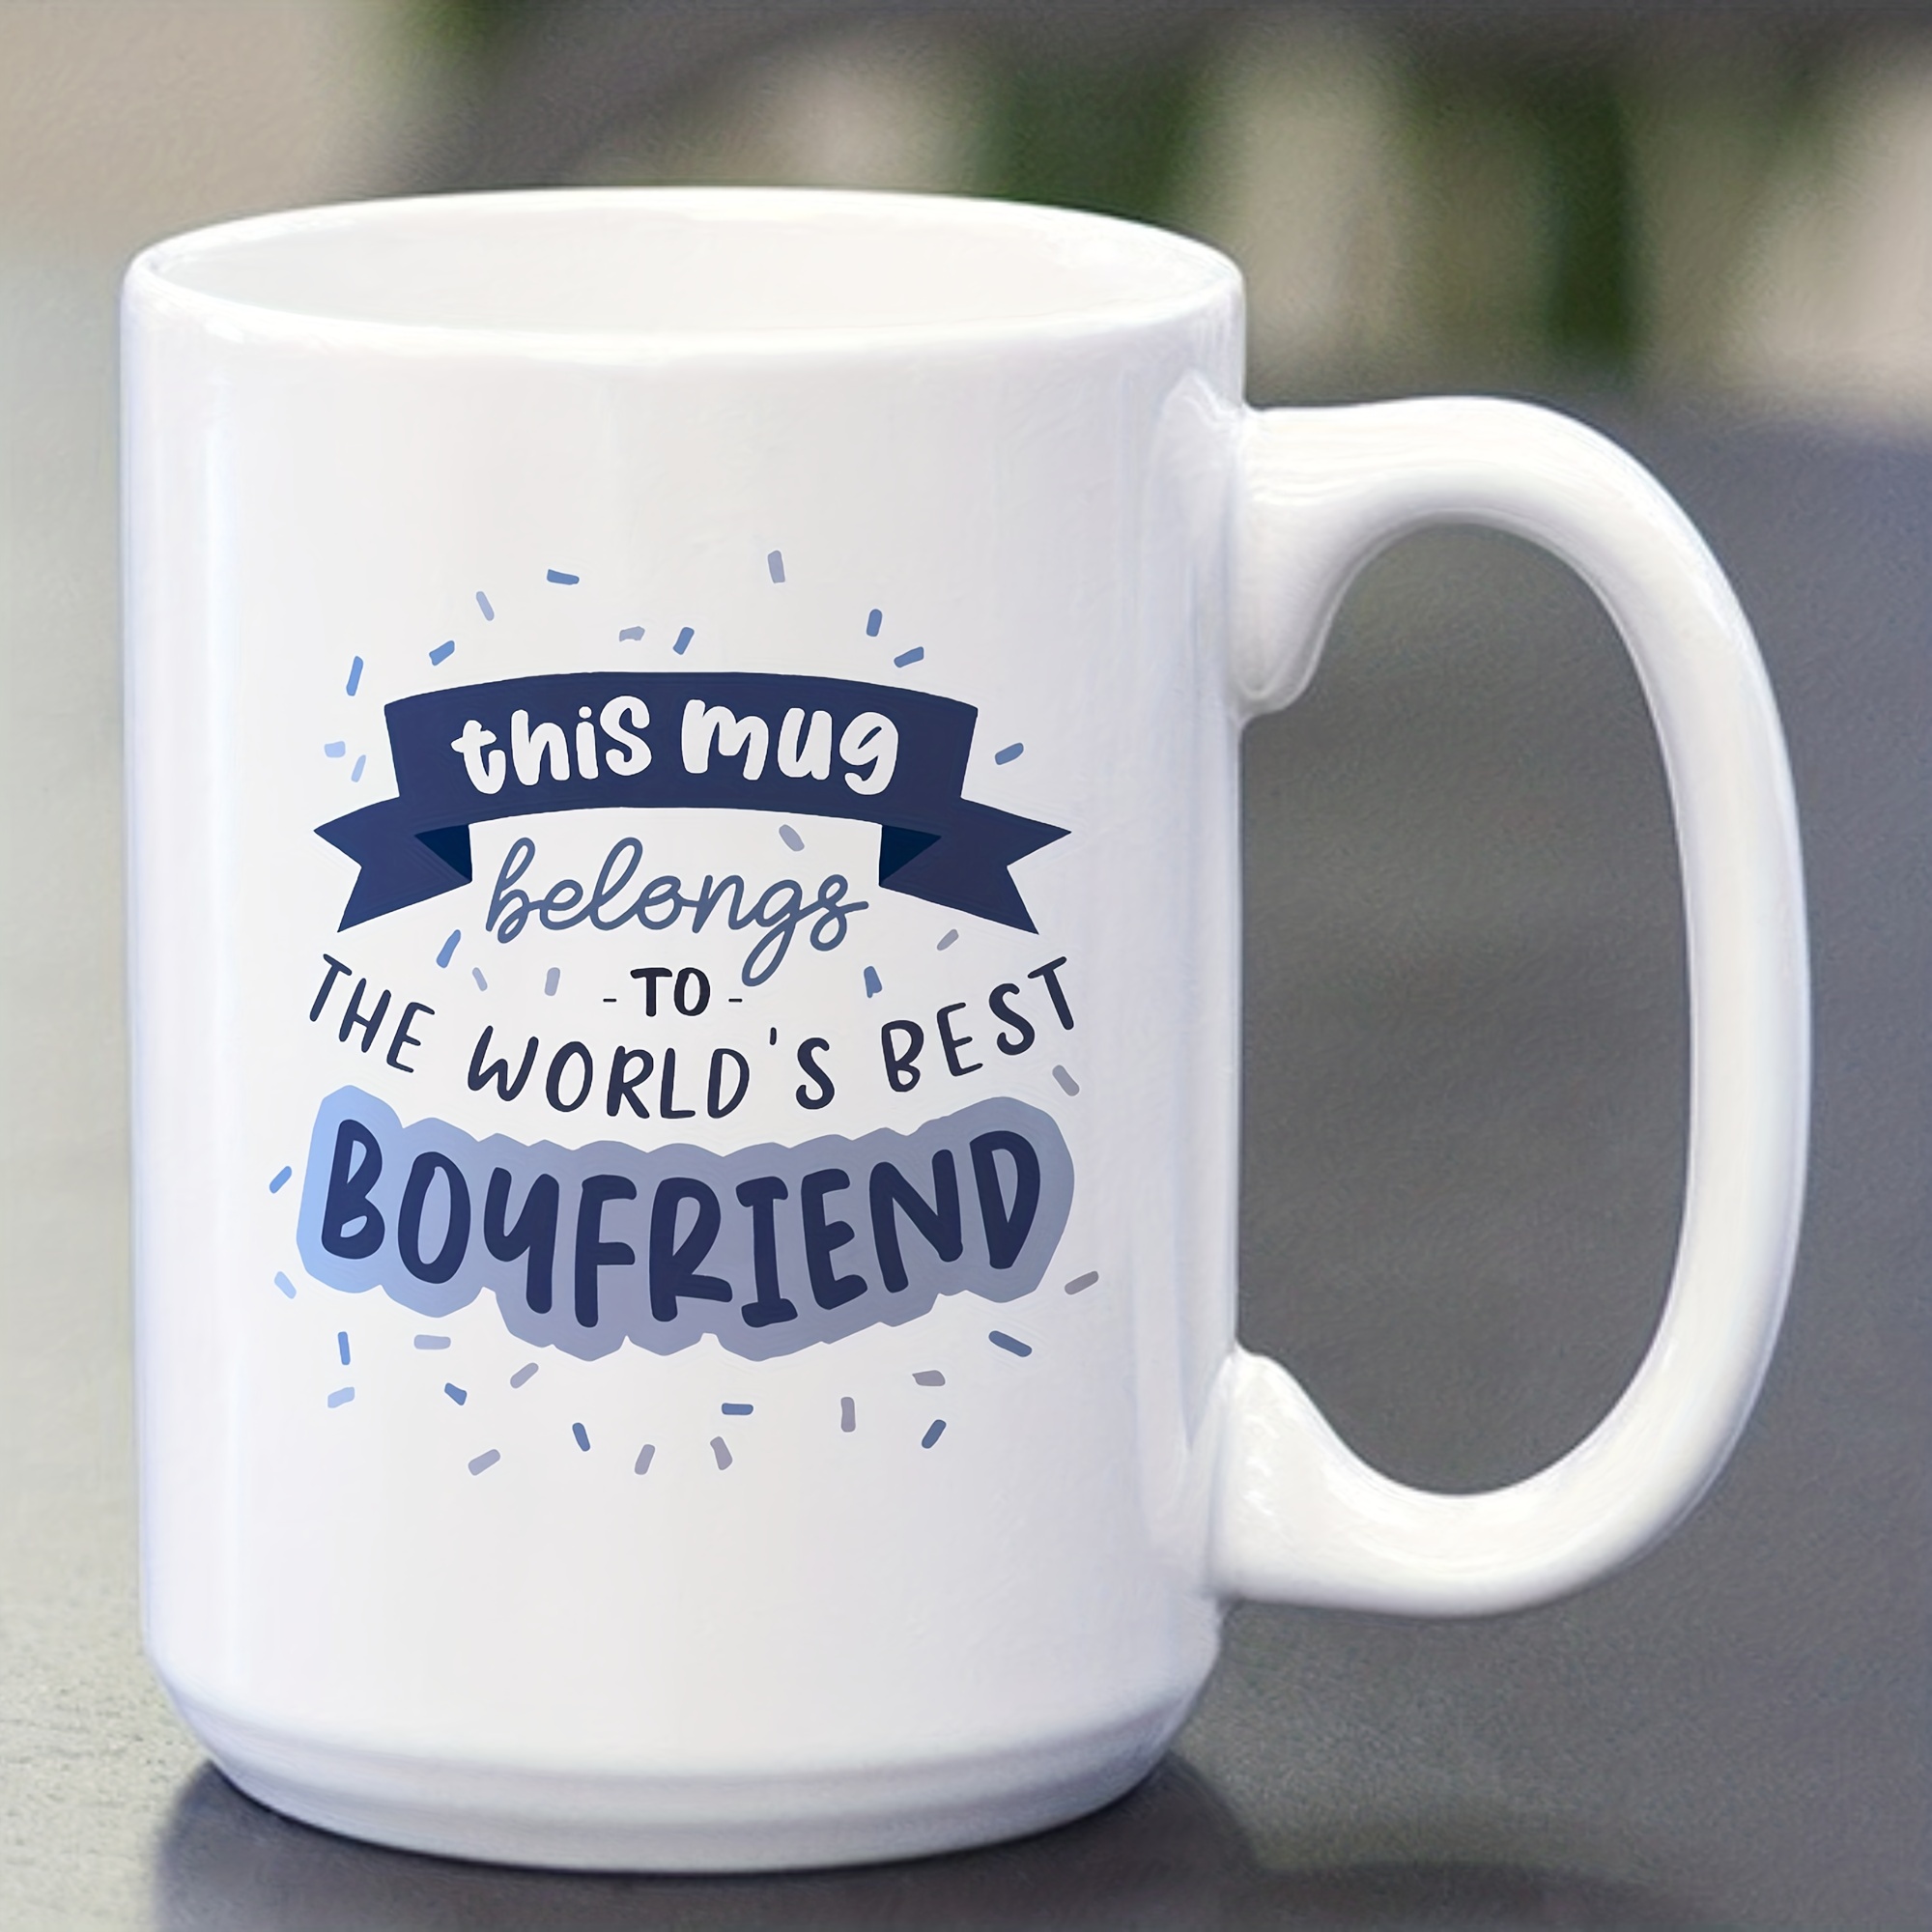 You Are A Great Boyfriend Mugfunny Birthday Mug for 